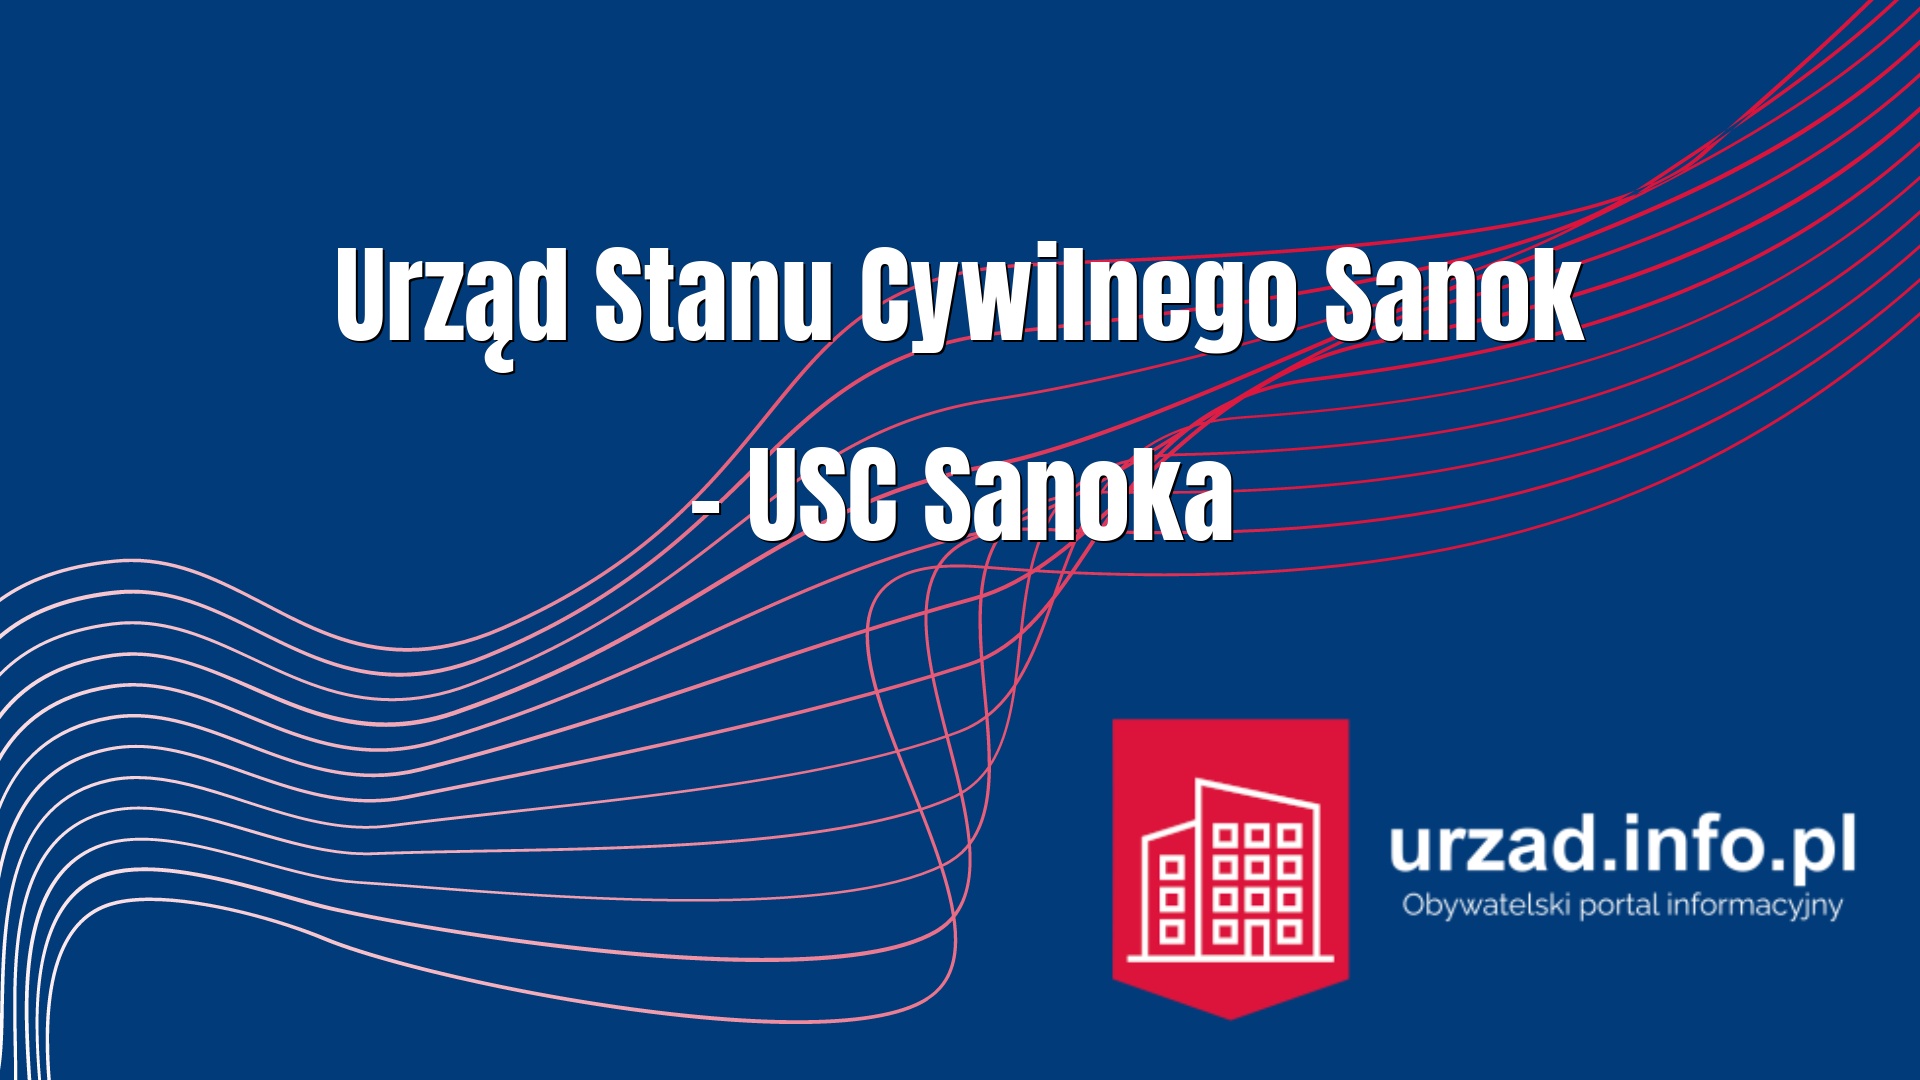 Urząd Stanu Cywilnego Sanok – USC Sanoka